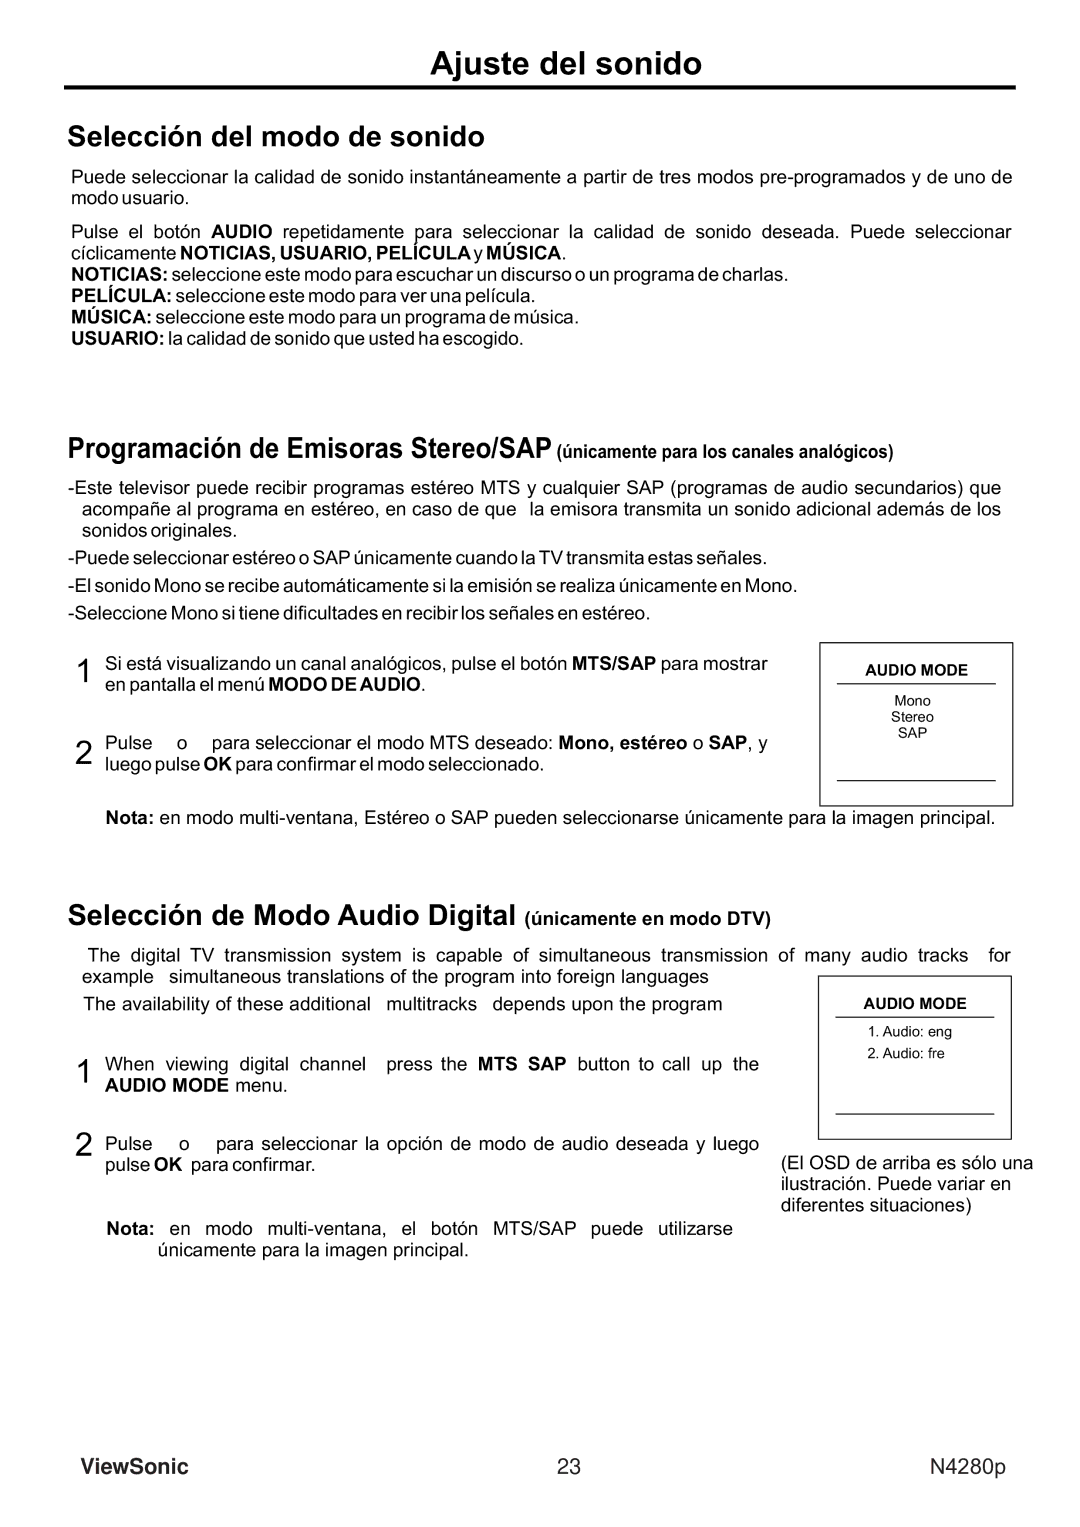 ViewSonic VS11838-1M manual Ajuste del sonido, Selección del modo de sonido, Sap 